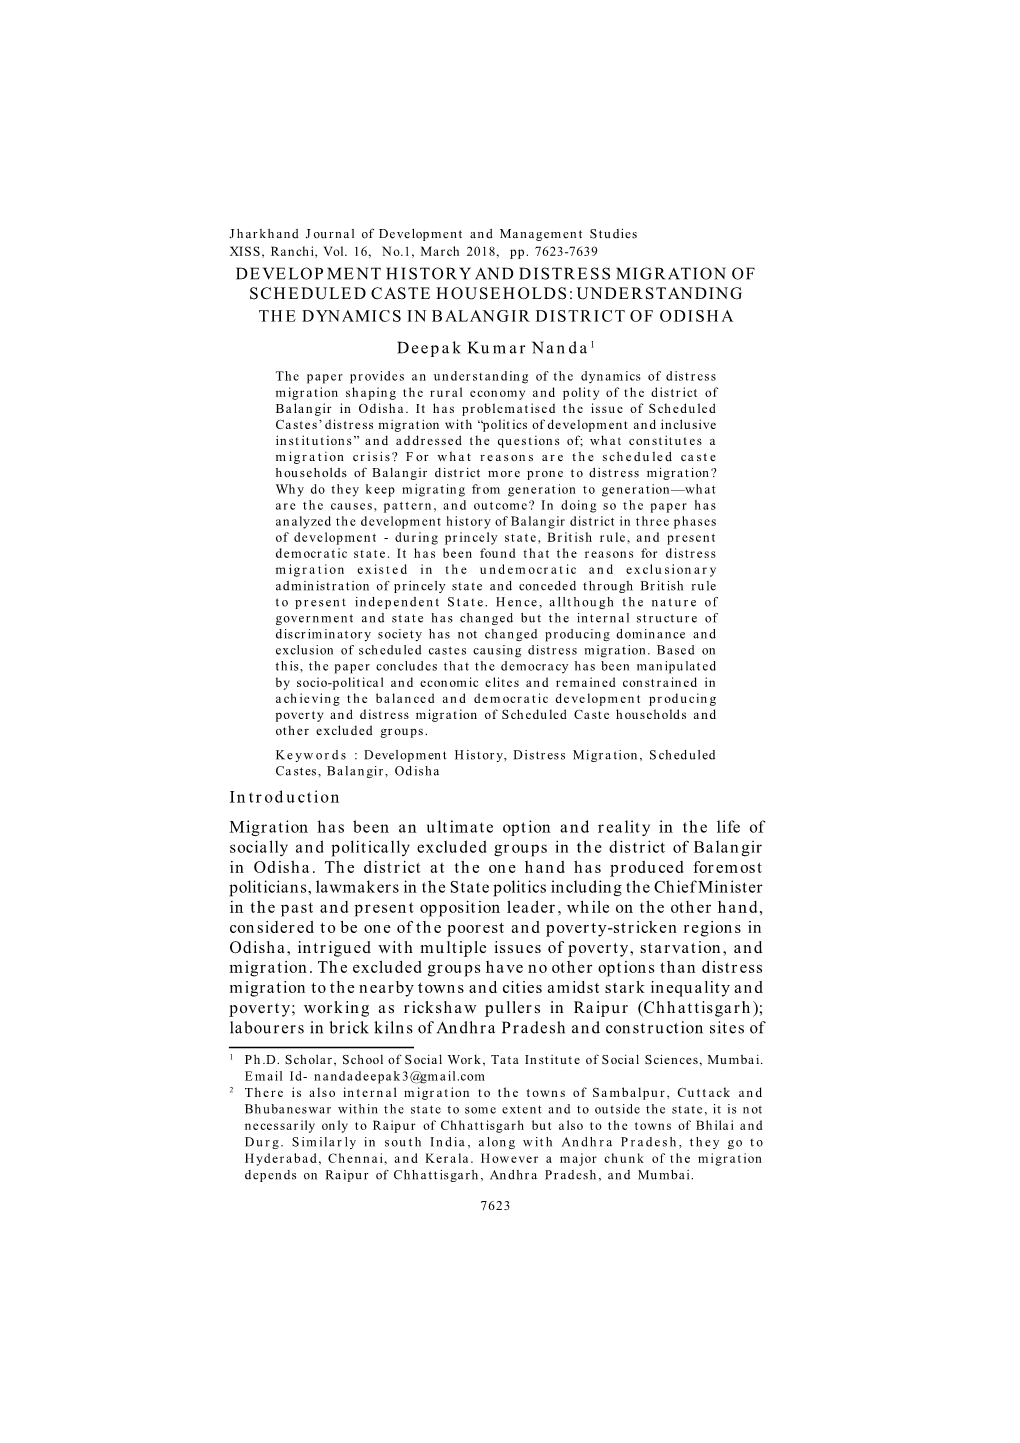 Full Text-PDF